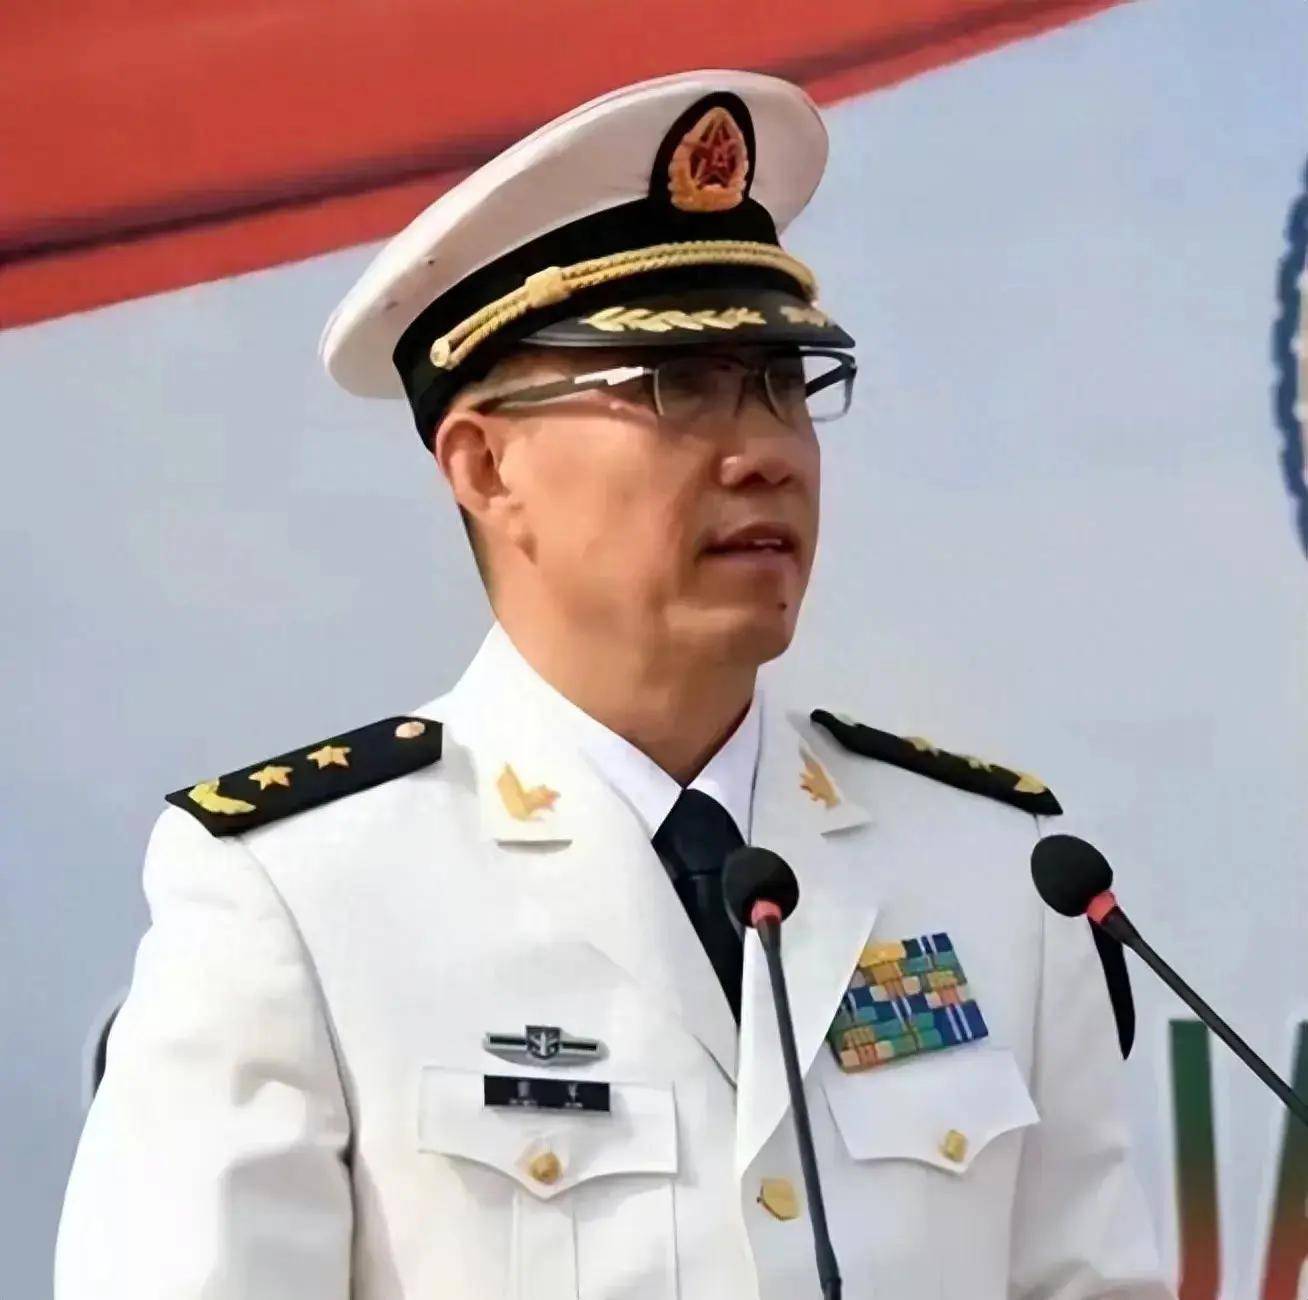 国防部发言人介绍中国—东盟防务安全领域合作情况